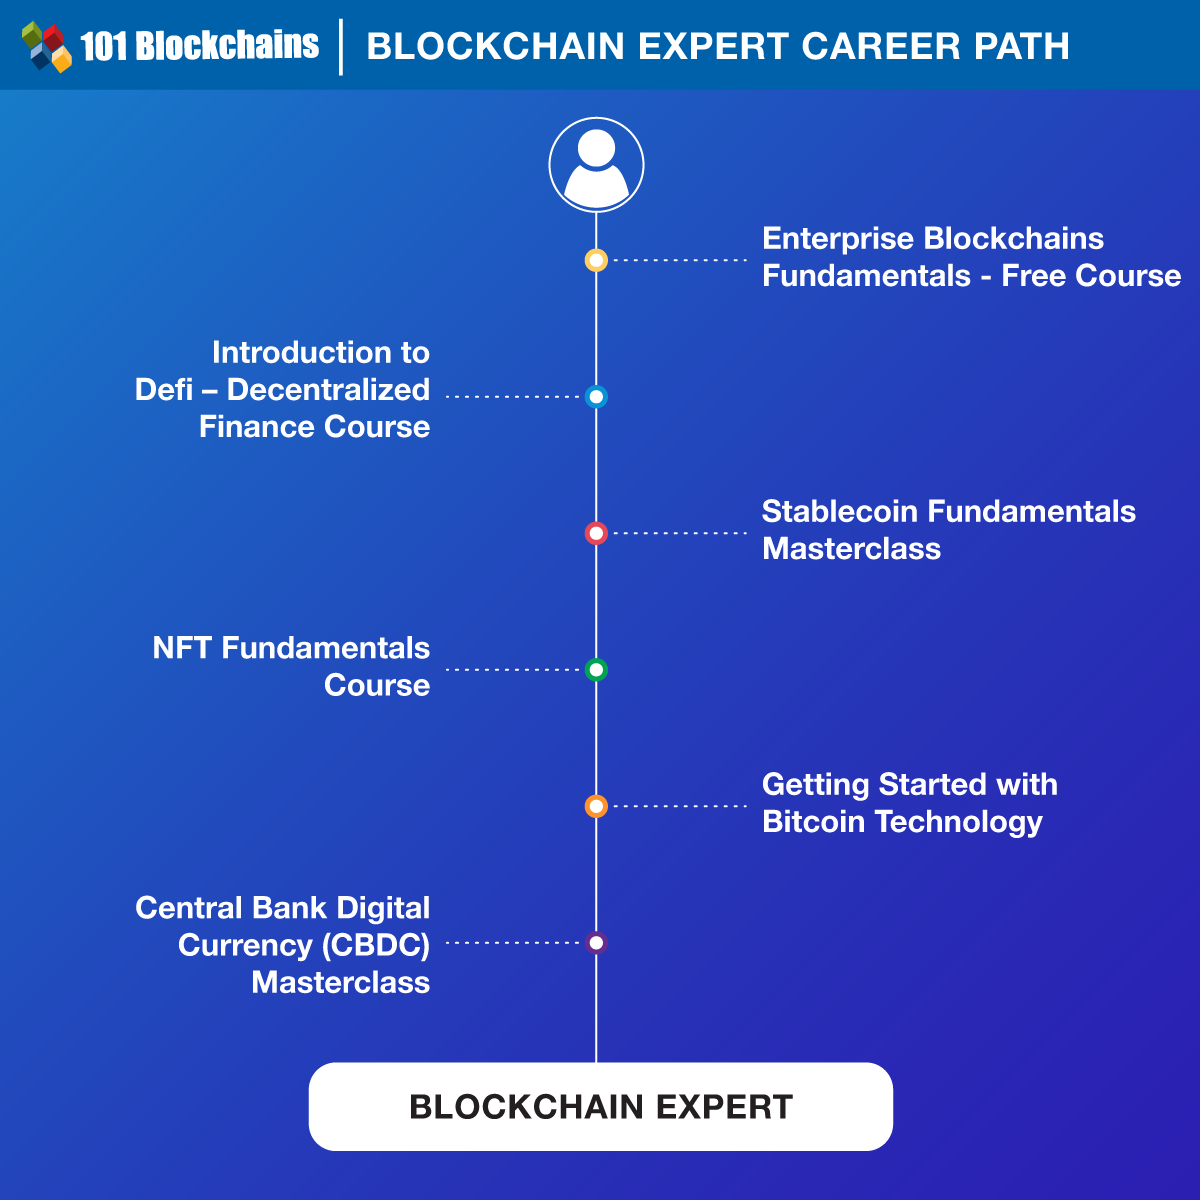 Percorso di carriera per esperti di blockchain